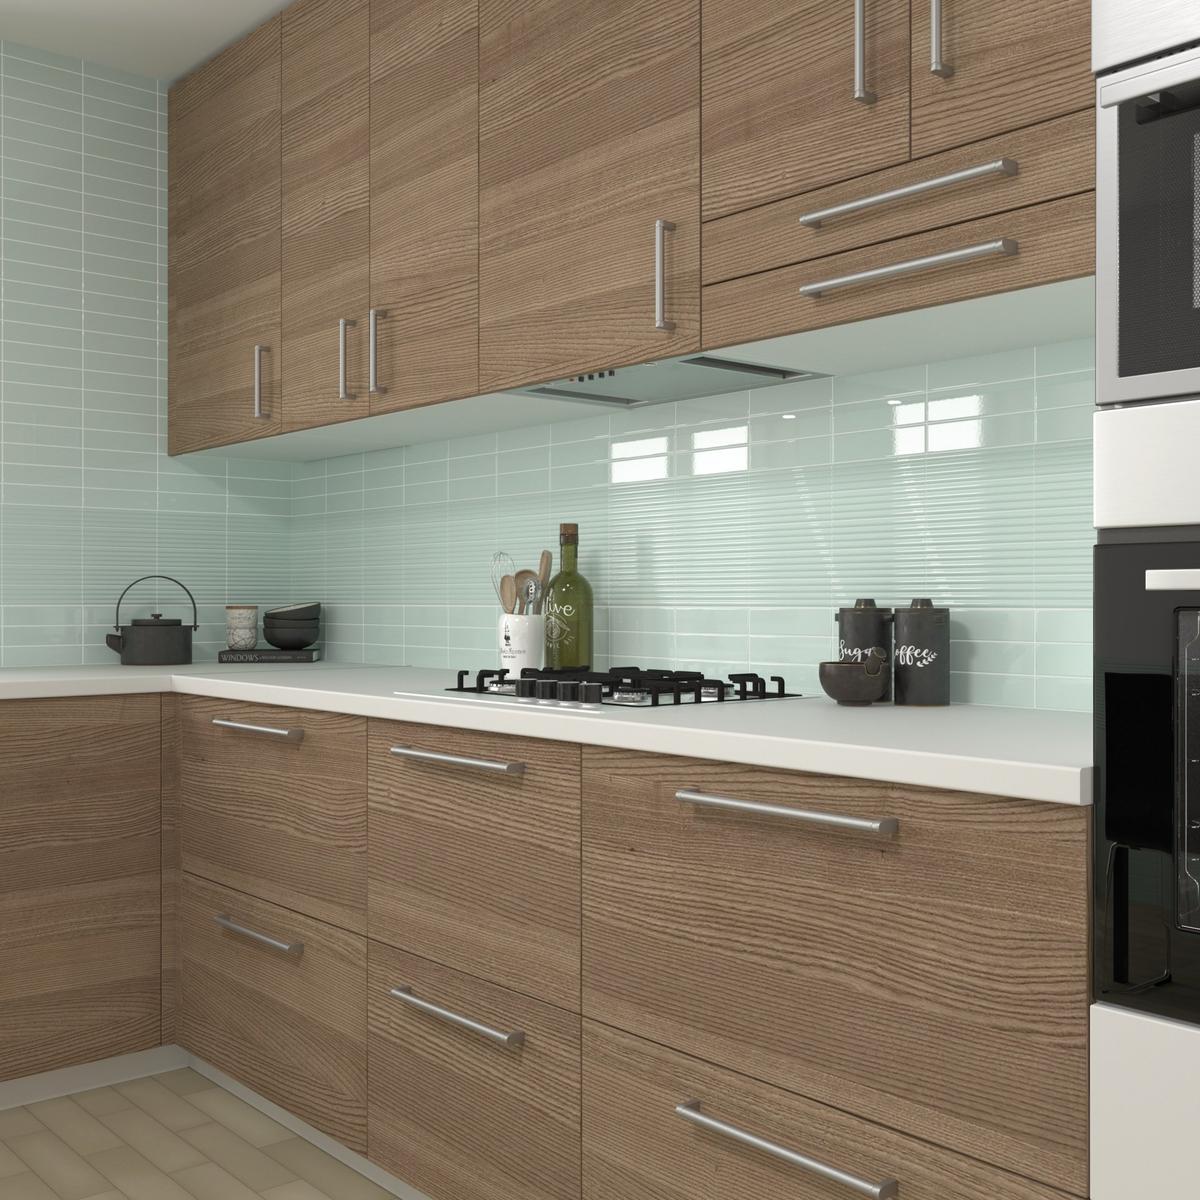 Carrelage uni vert clair dans une cuisine avec meubles en bois marron, plan de travail blanc, éléments décoratifs verts et noirs